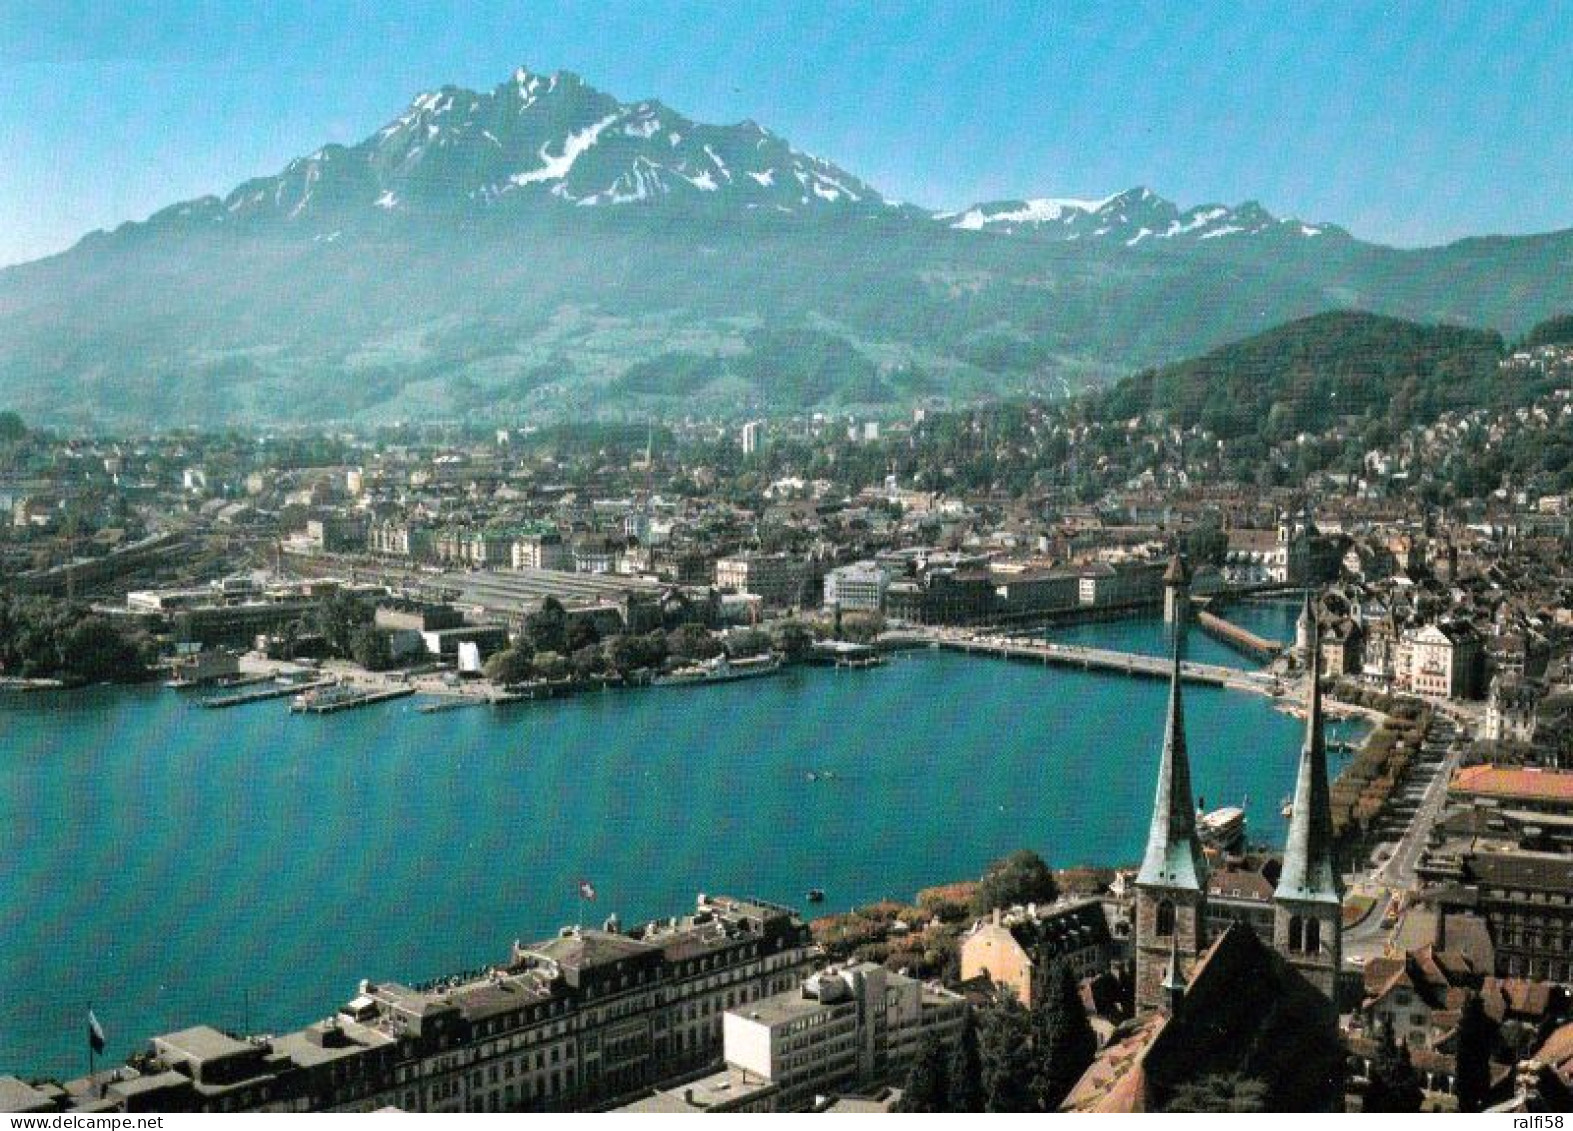 1 AK Schweiz * Blick Auf Luzern - Im Vordergrund Die Hofkirche - Luftbildaufnahme * - Luzern